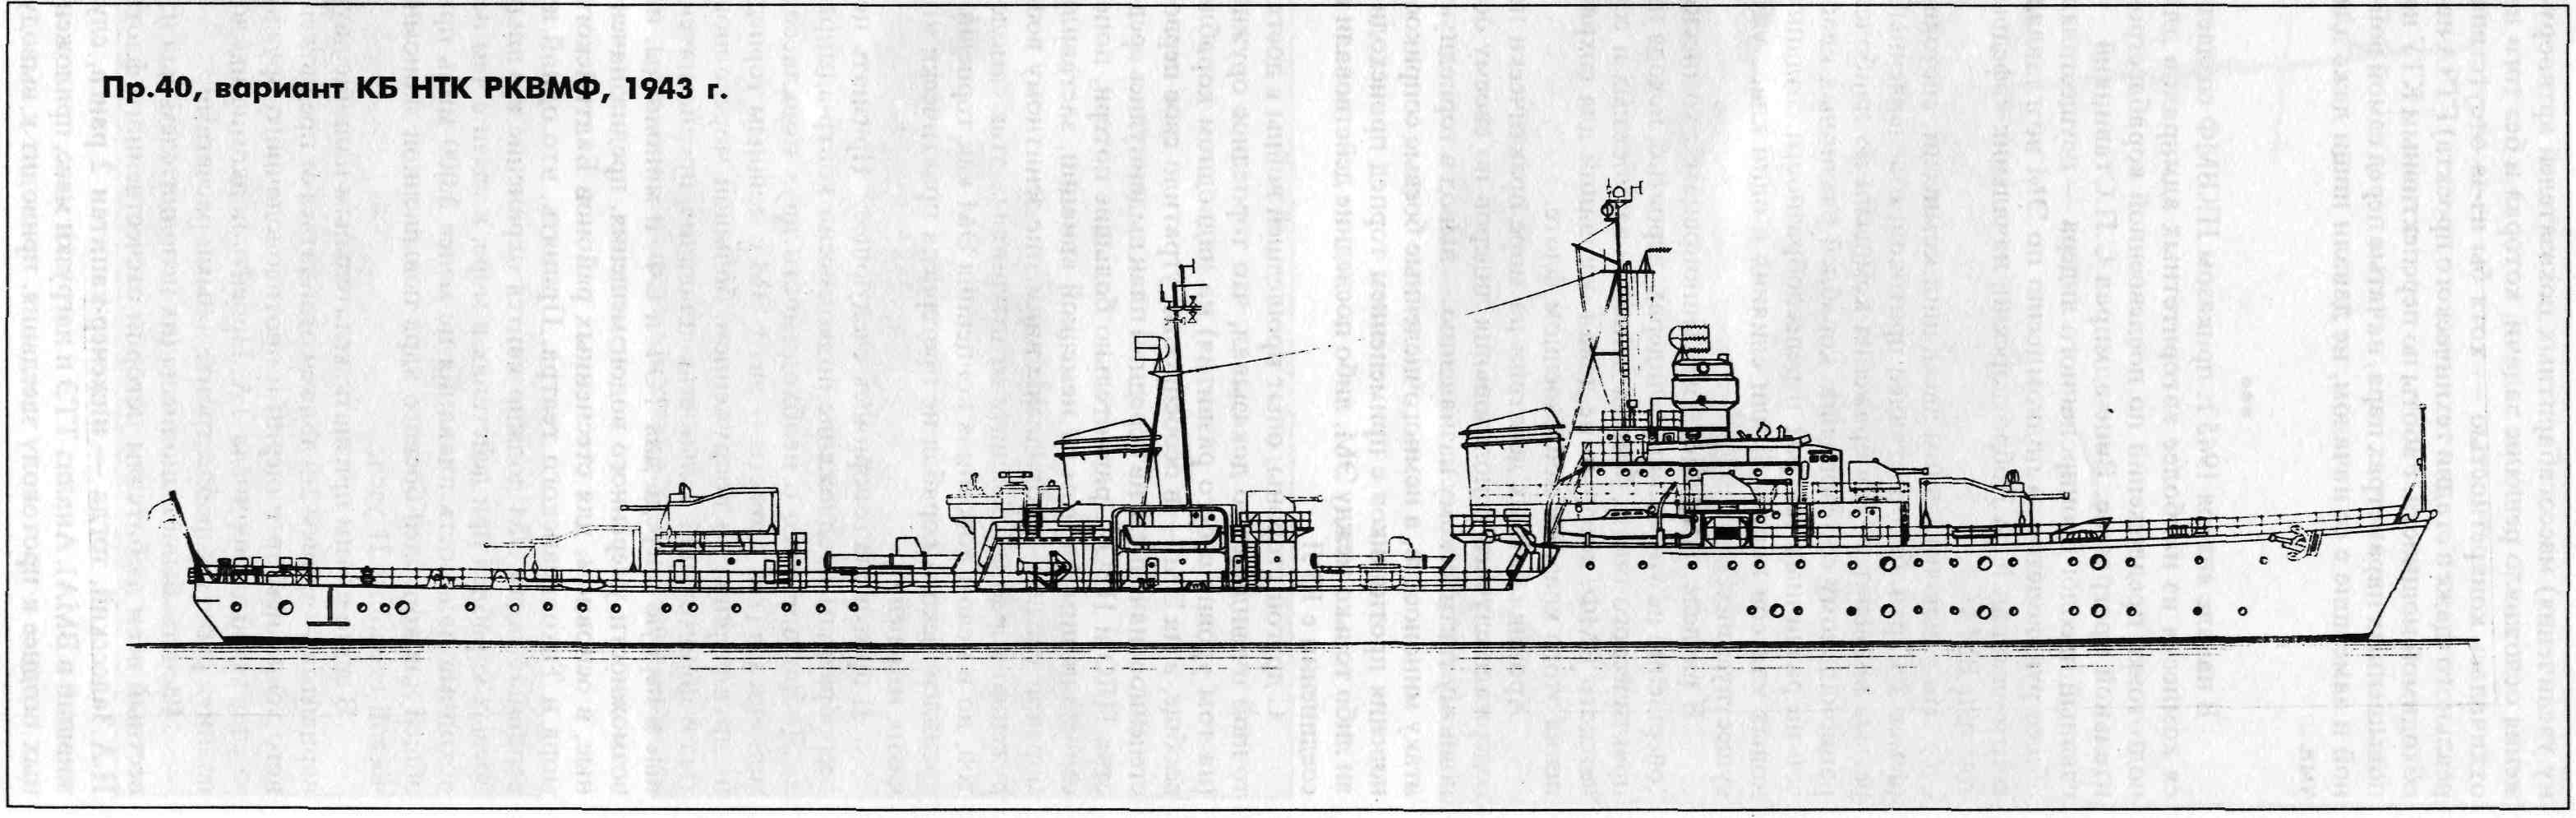 酷似德国1936c型驱逐舰的kb stc rkvmf型